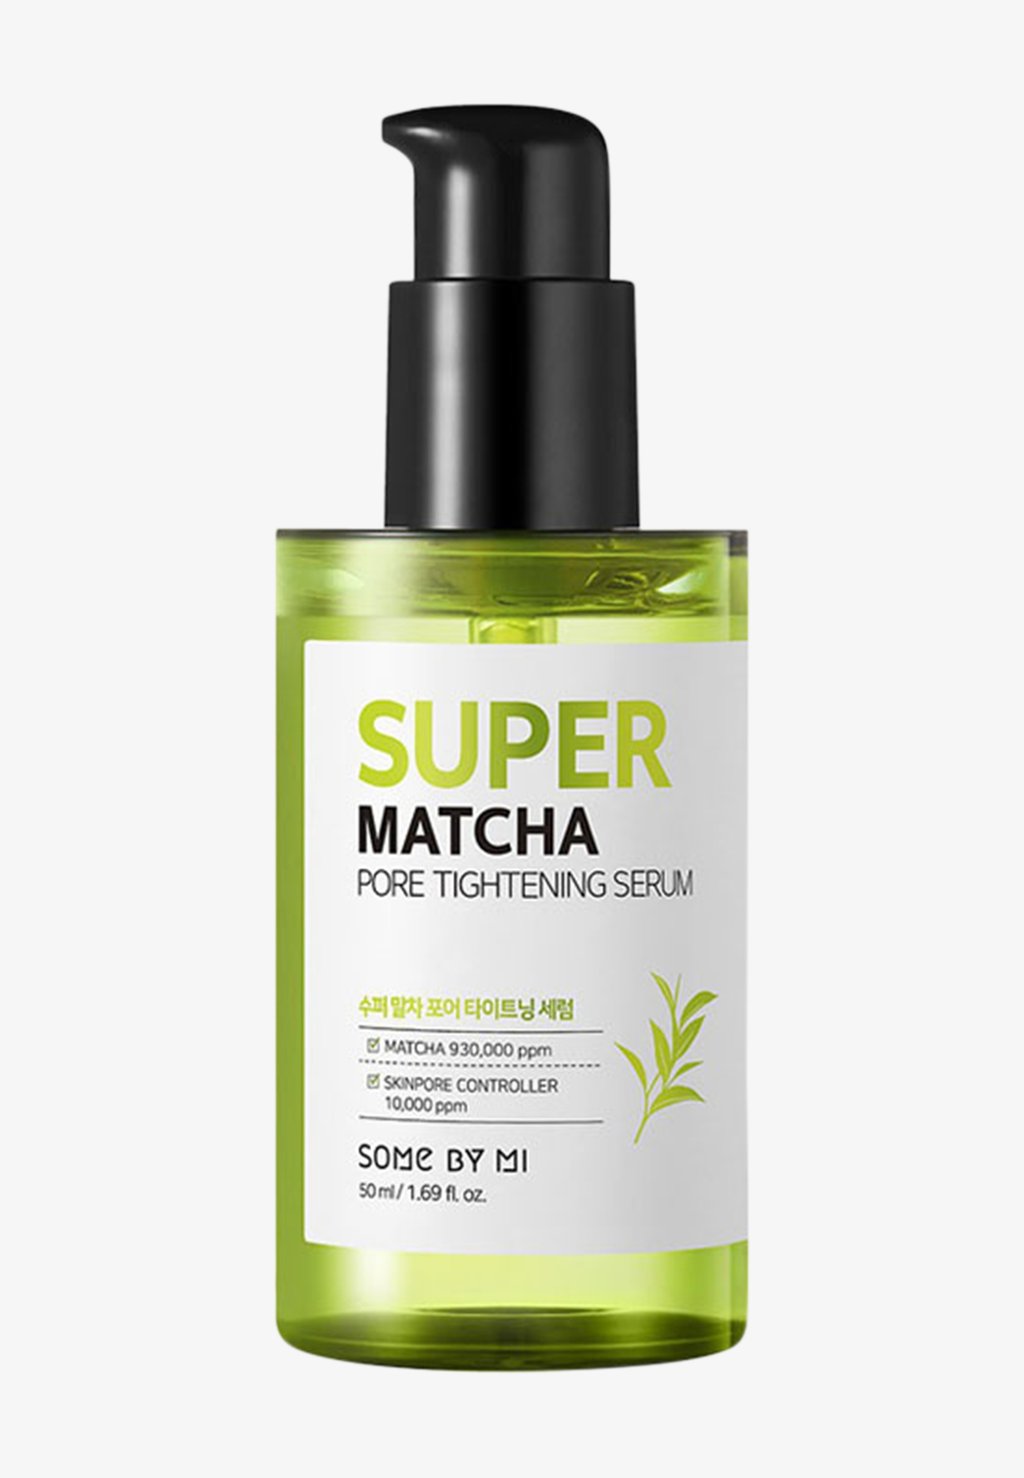 some by mi super matcha pore tightening serum Сыворотка Super Matcha Pore Tightening Serum SOME BY MI